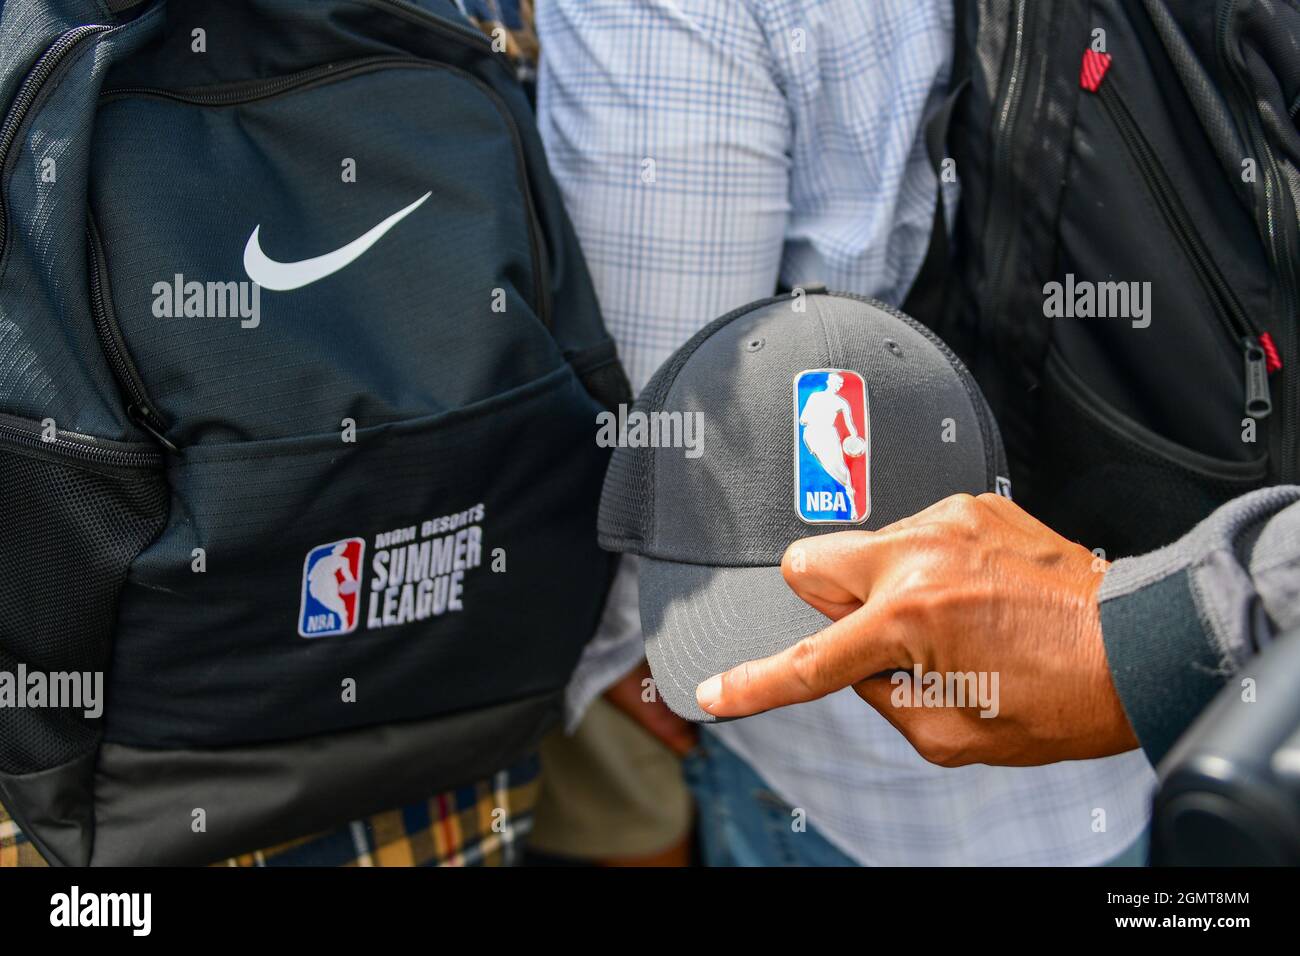 Un fotógrafo lleva un sombrero con el logotipo de la NBA junto a una mochila Nike bordada con la NBA Summer League durante una ceremonia revolucionaria para la nueva h. Foto de stock